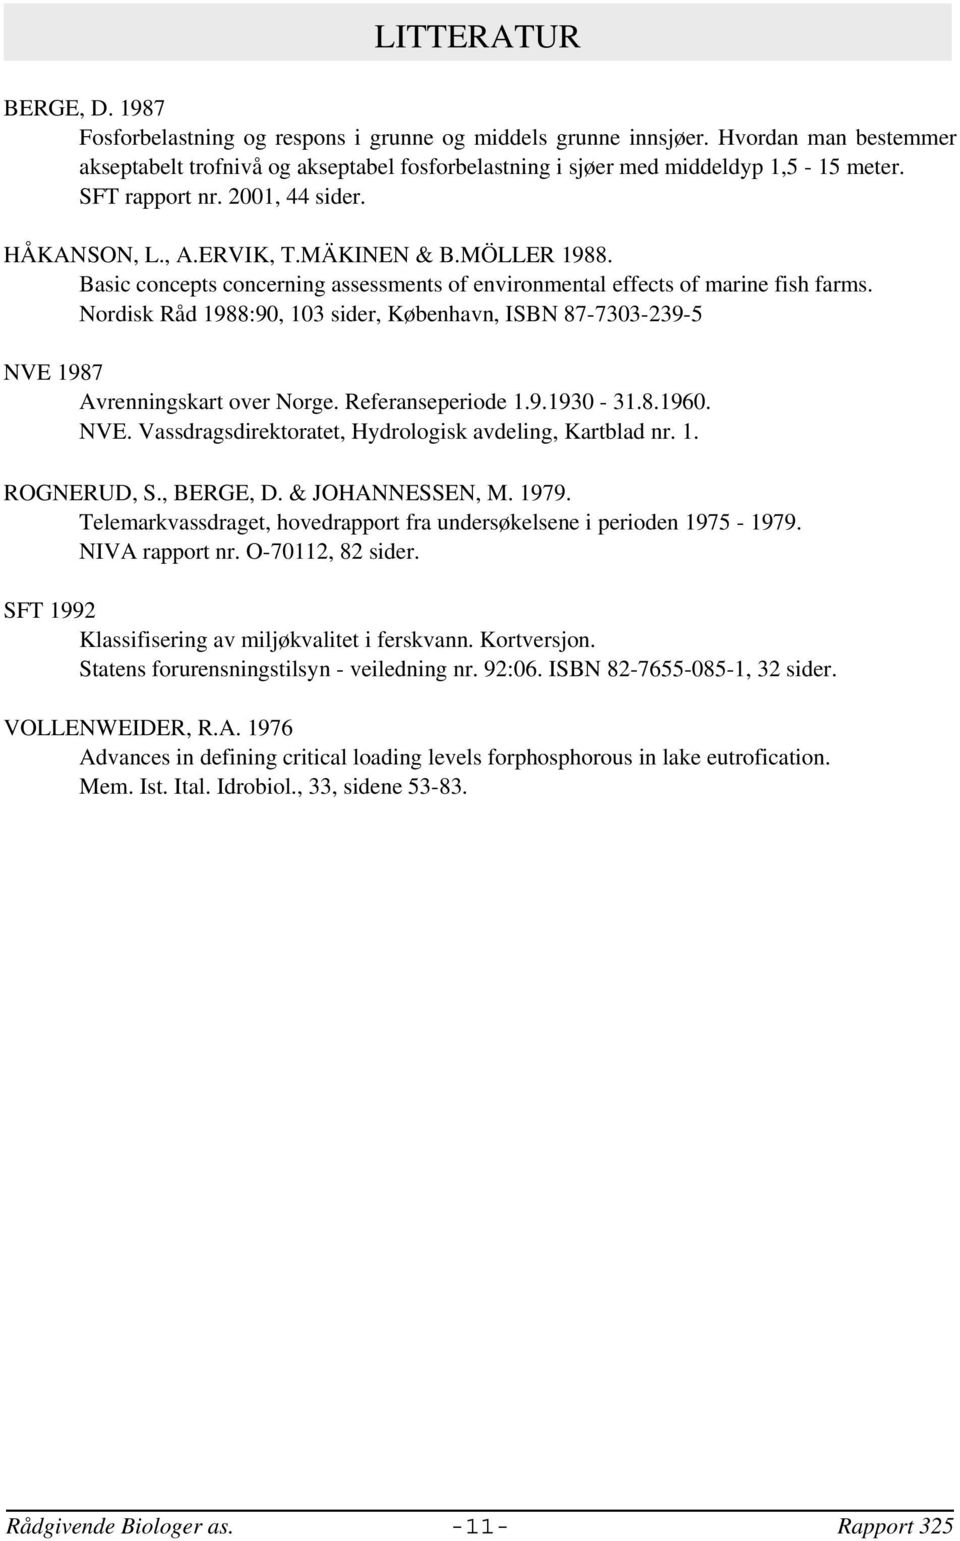 Nordisk Råd 1988:90, 103 sider, København, ISBN 87-7303-239-5 NVE 1987 Avrenningskart over Norge. Referanseperiode 1.9.1930-31.8.1960. NVE. Vassdragsdirektoratet, Hydrologisk avdeling, Kartblad nr. 1. ROGNERUD, S.